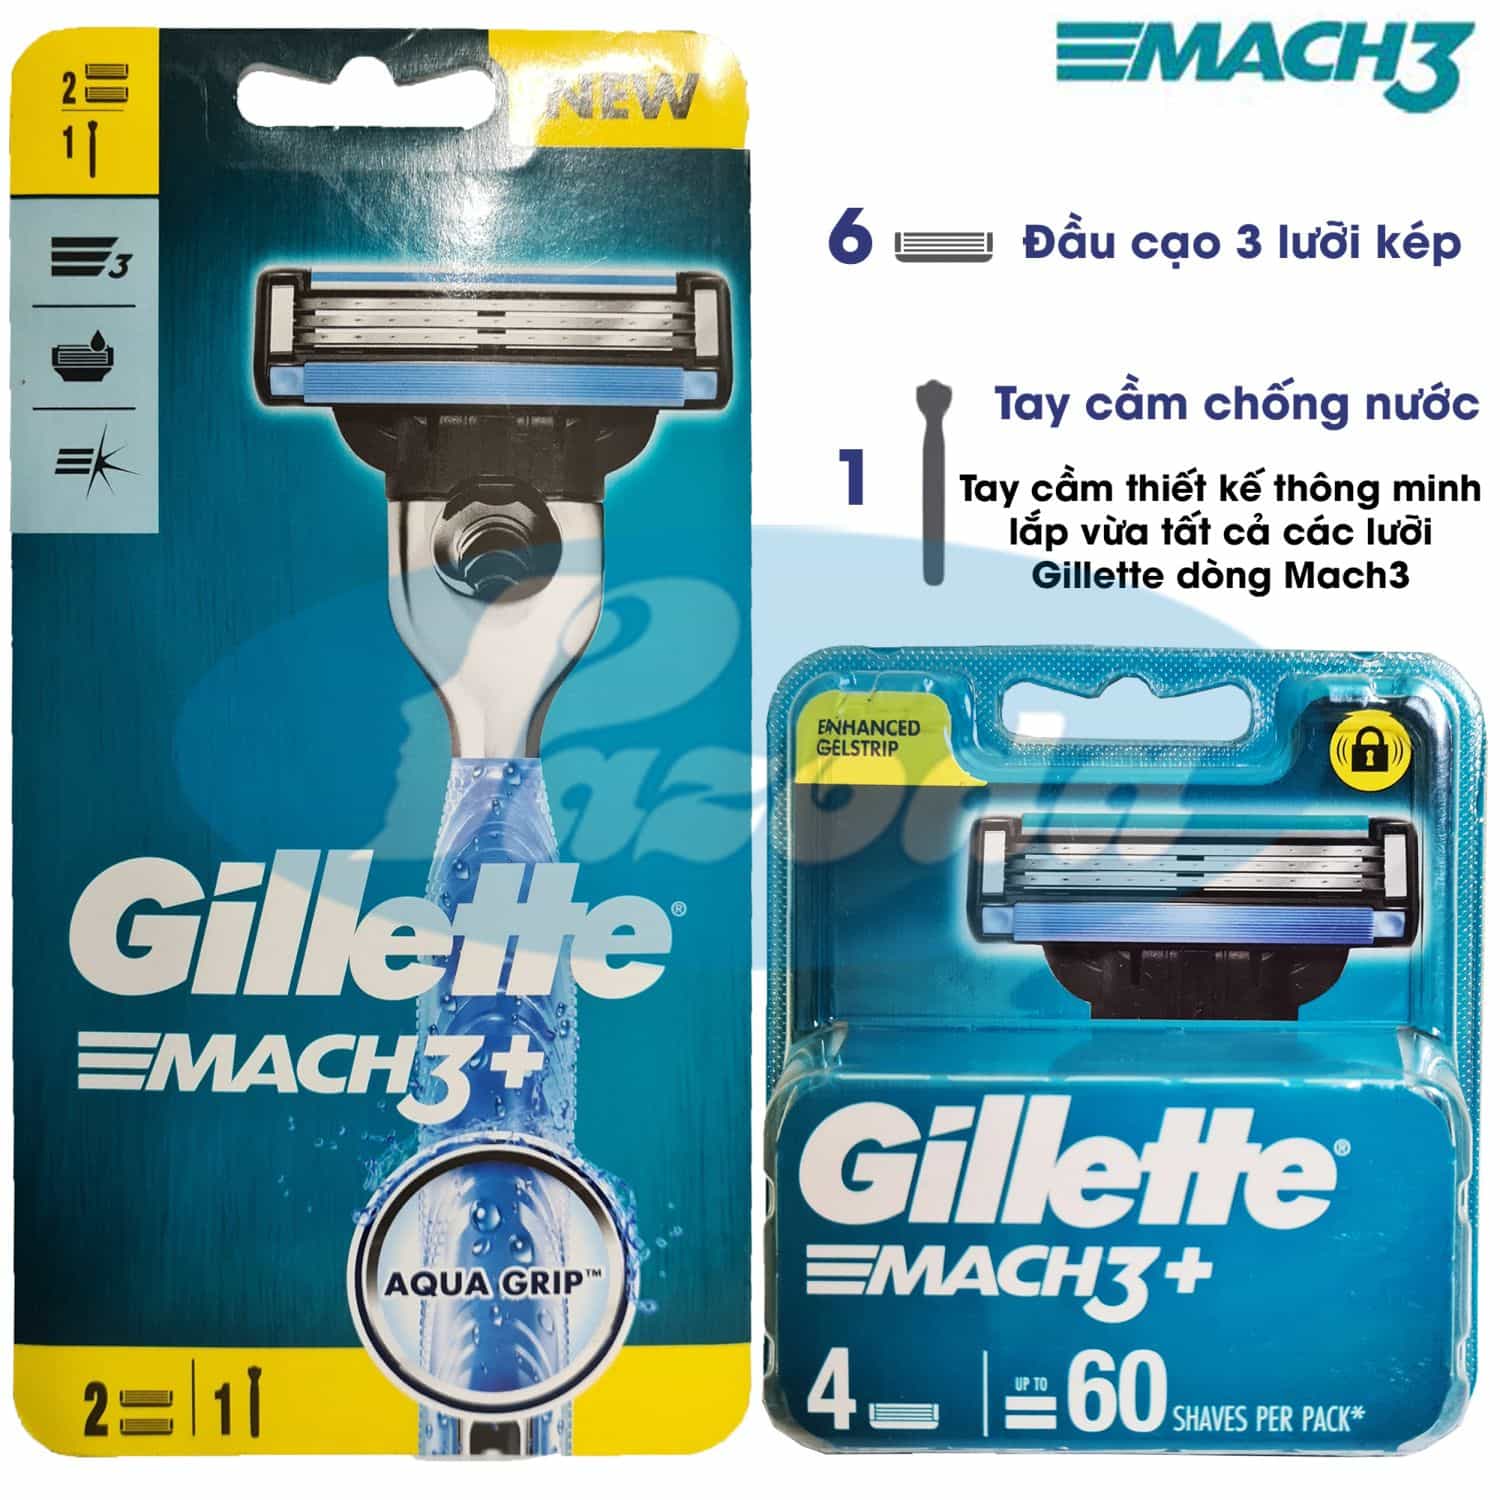 Bộ dao cạo râu Gillette Mach3 với 1 tay cầm và 6 đầu cạo 3 lưỡi kép